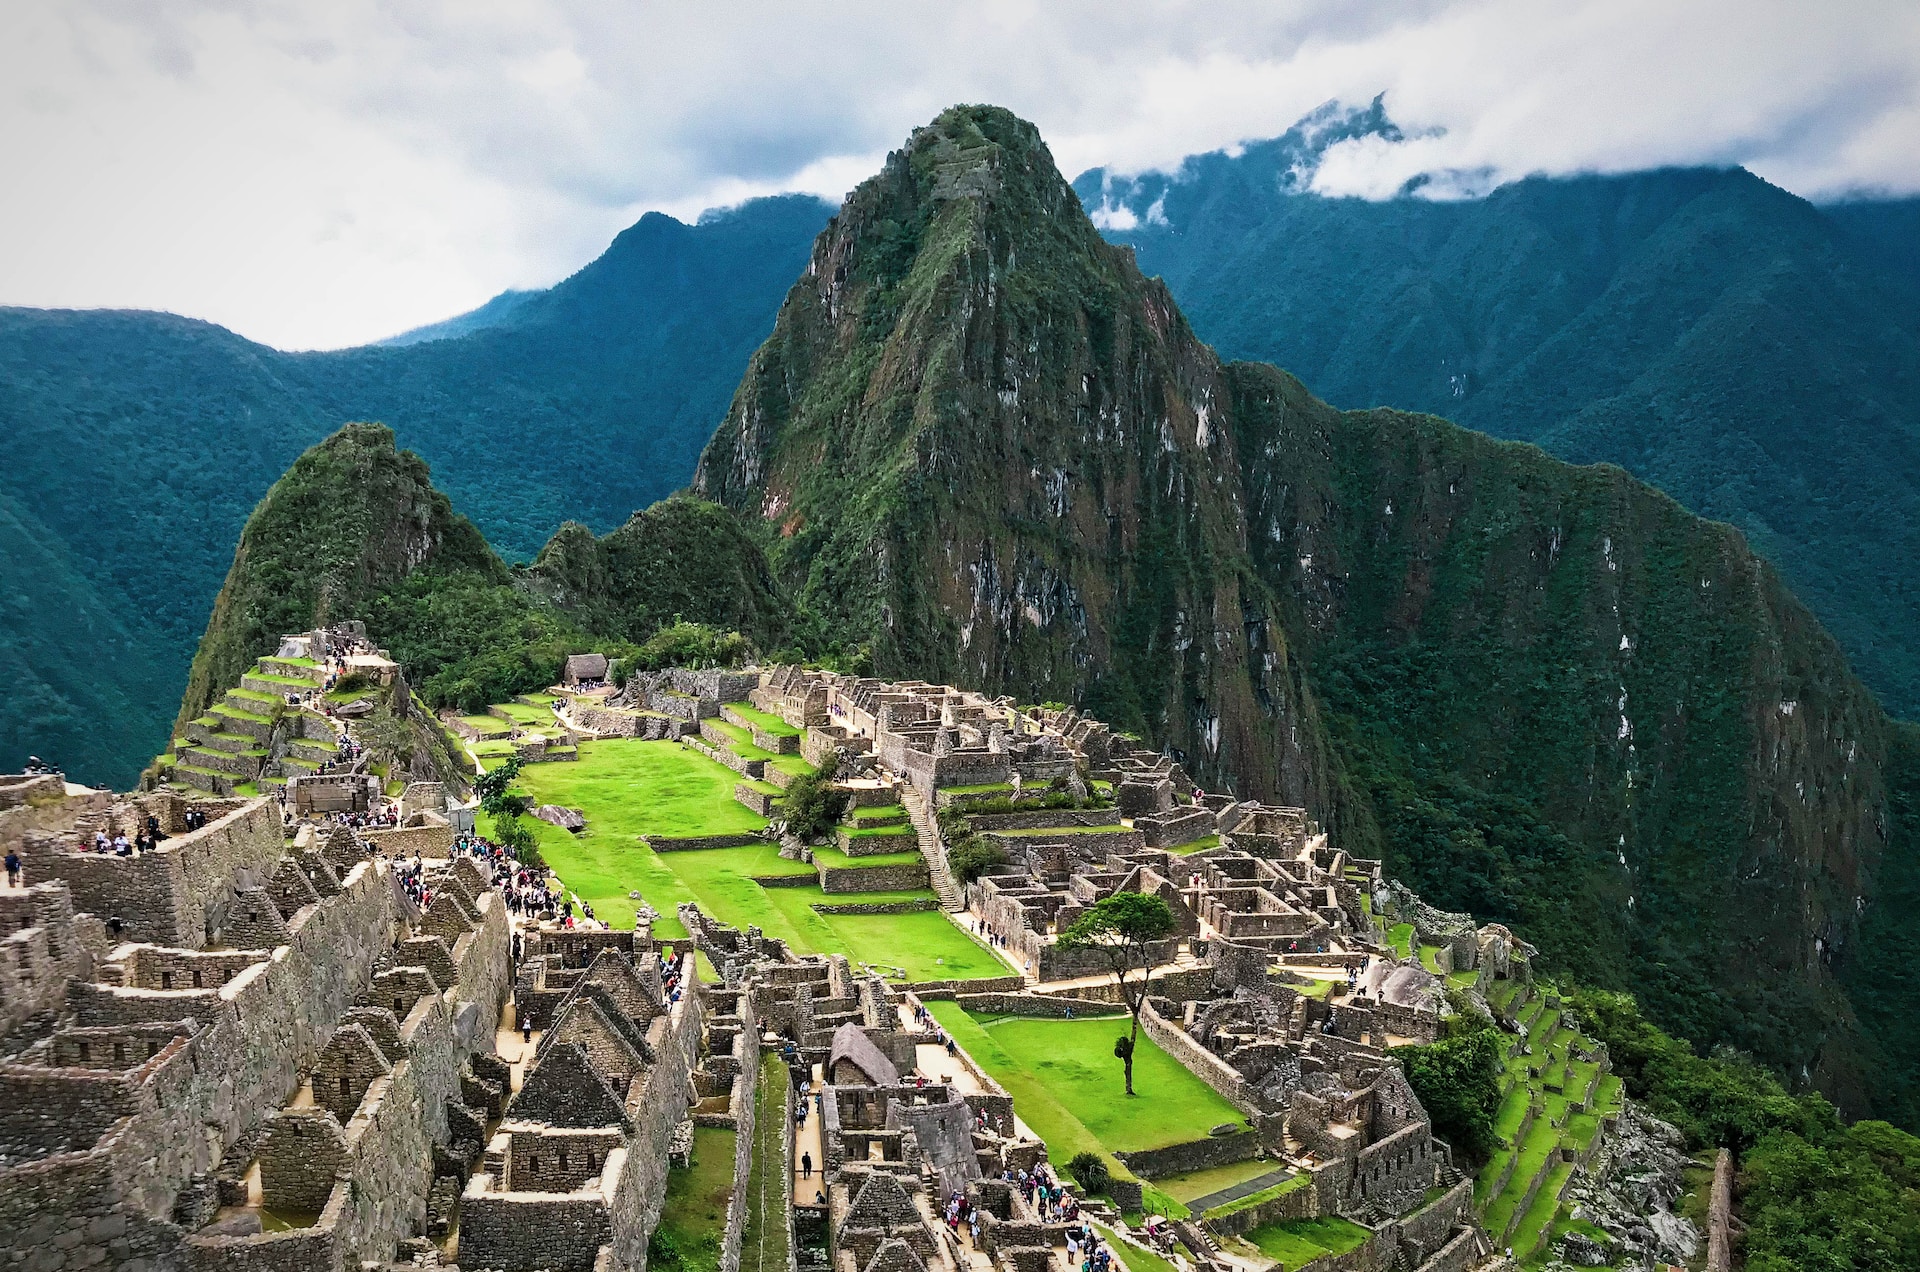 How long does it take to climb Machu Picchu?